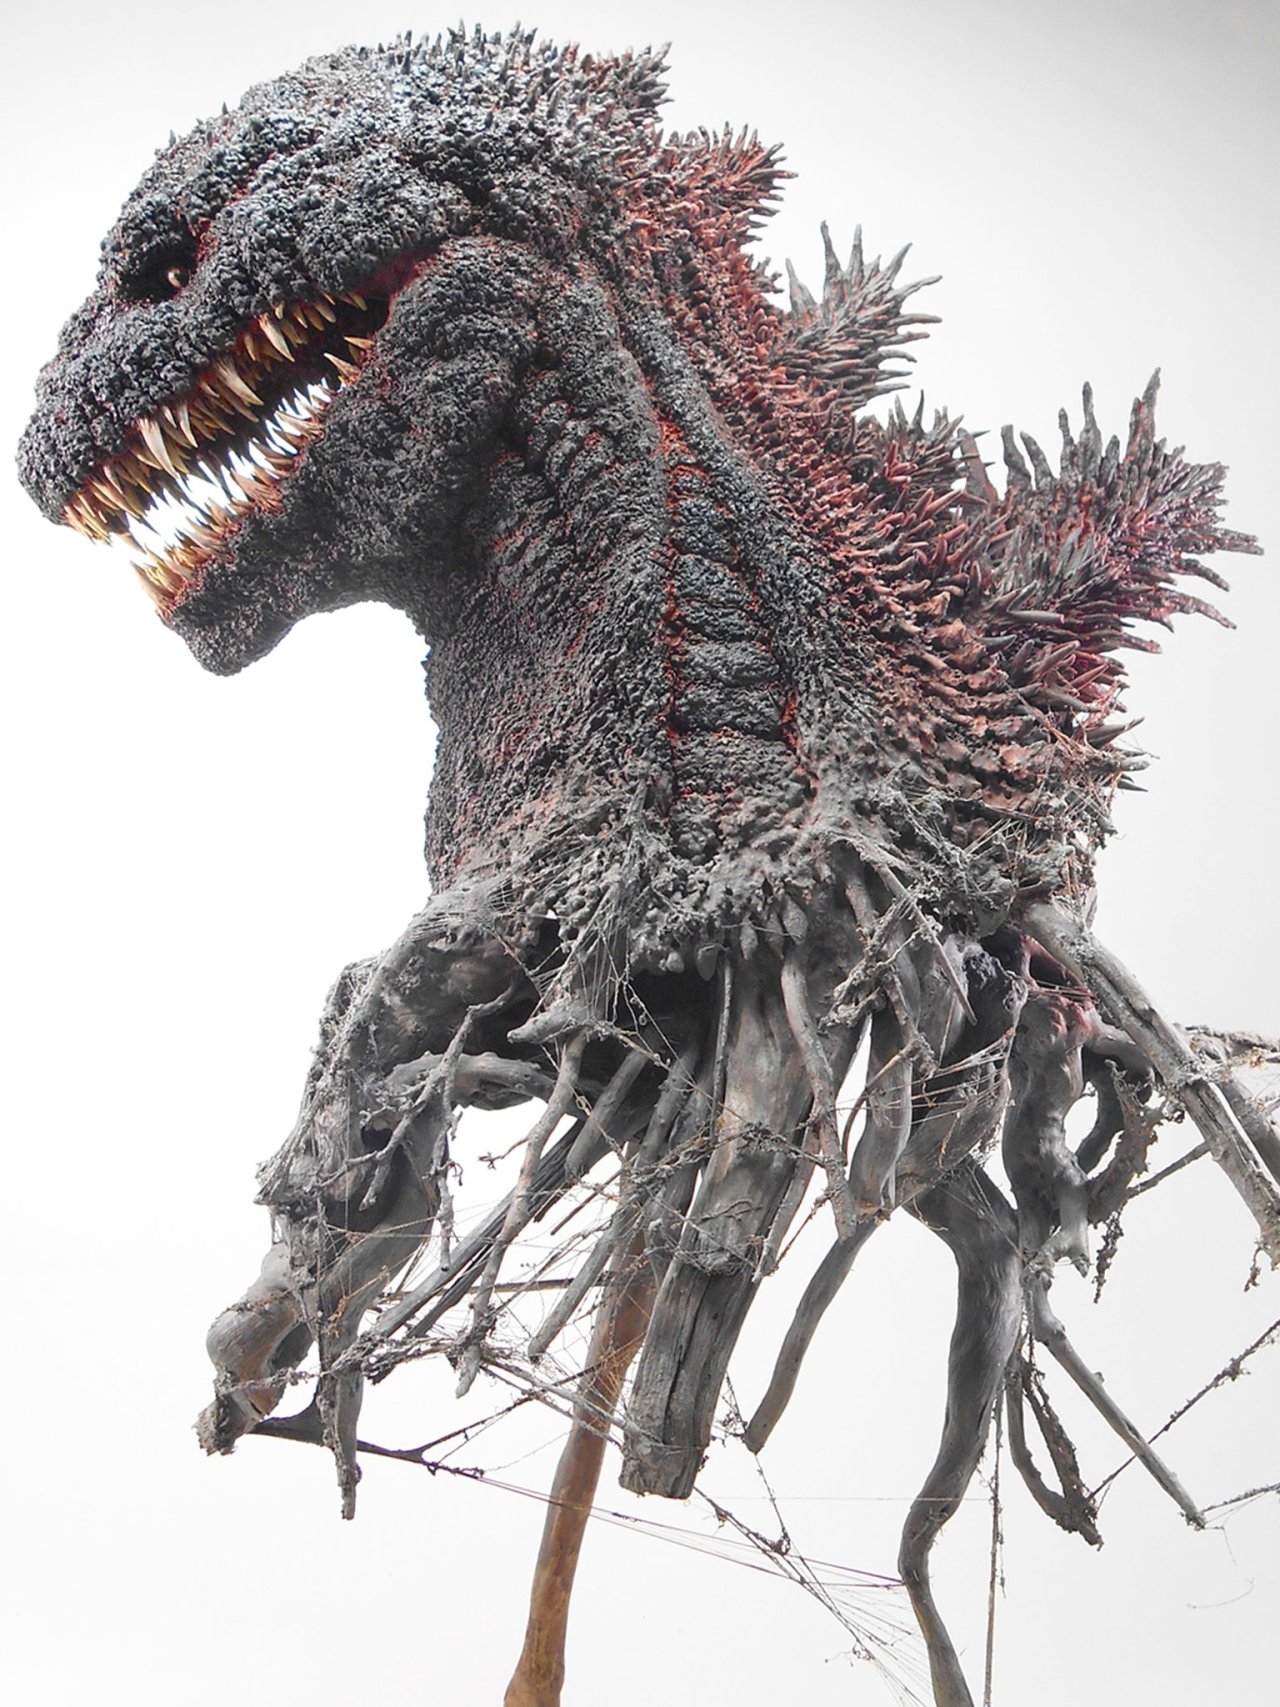 random pics - Godzilla Resurgence